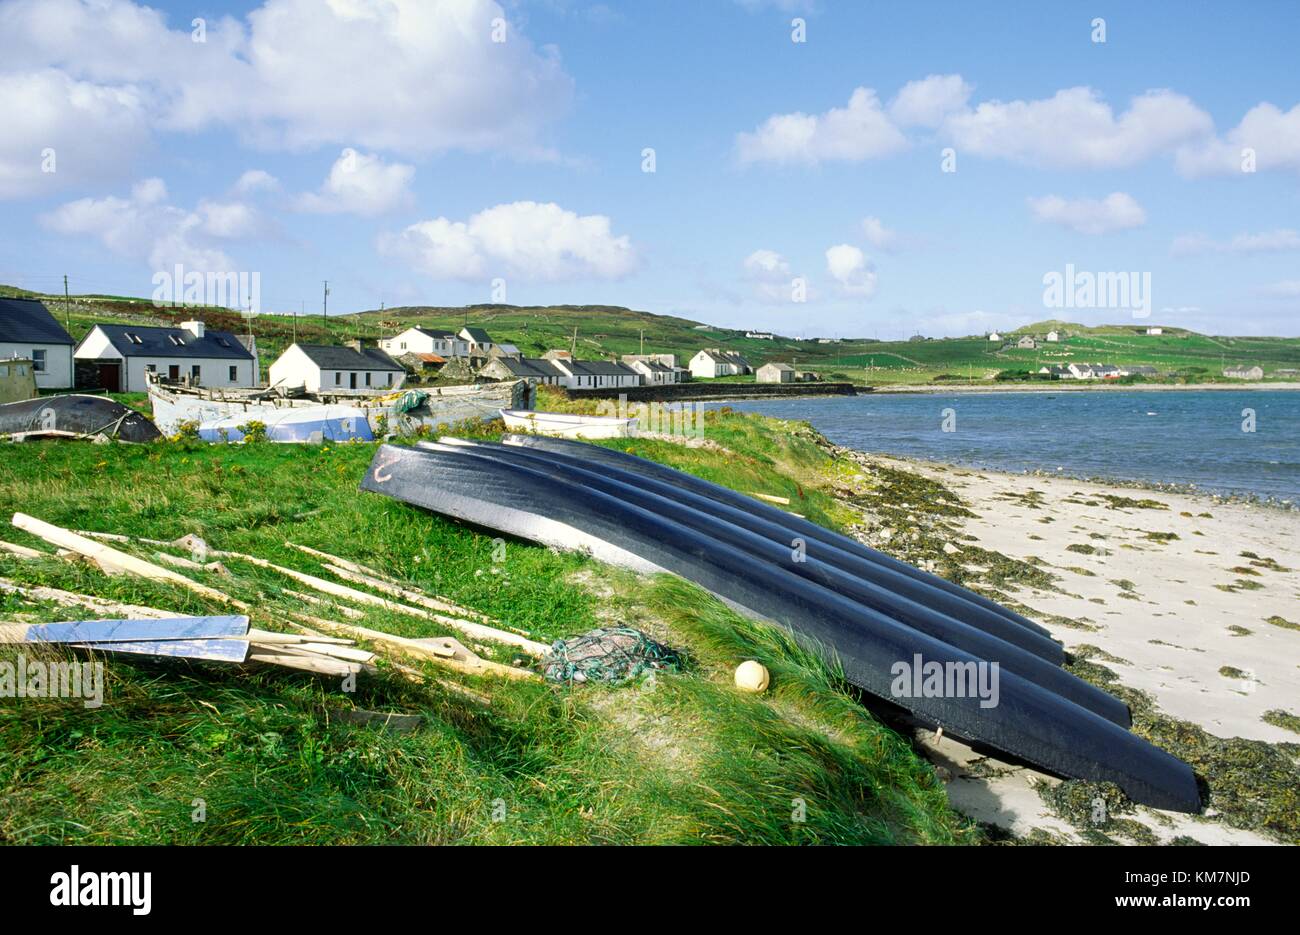 Bateaux traditionnels currachs toile sur côte est de l'île d'Inishbofin au large de la côte ouest du comté de Galway, Irlande. Banque D'Images